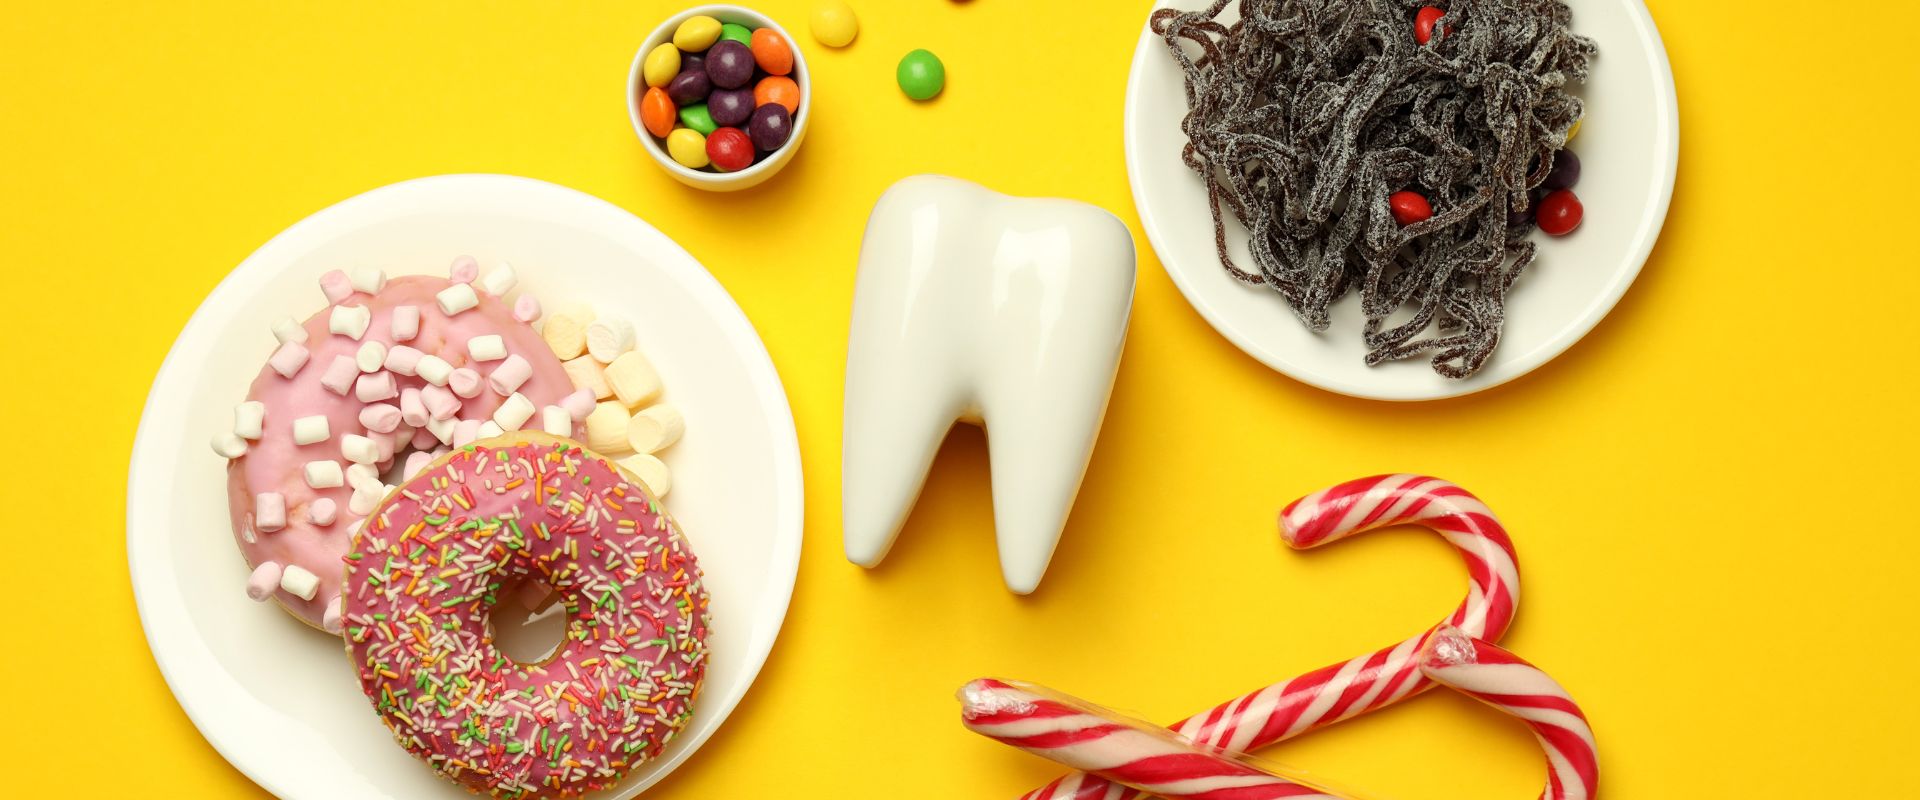 Ist Zucker schädlich für die Zähne?